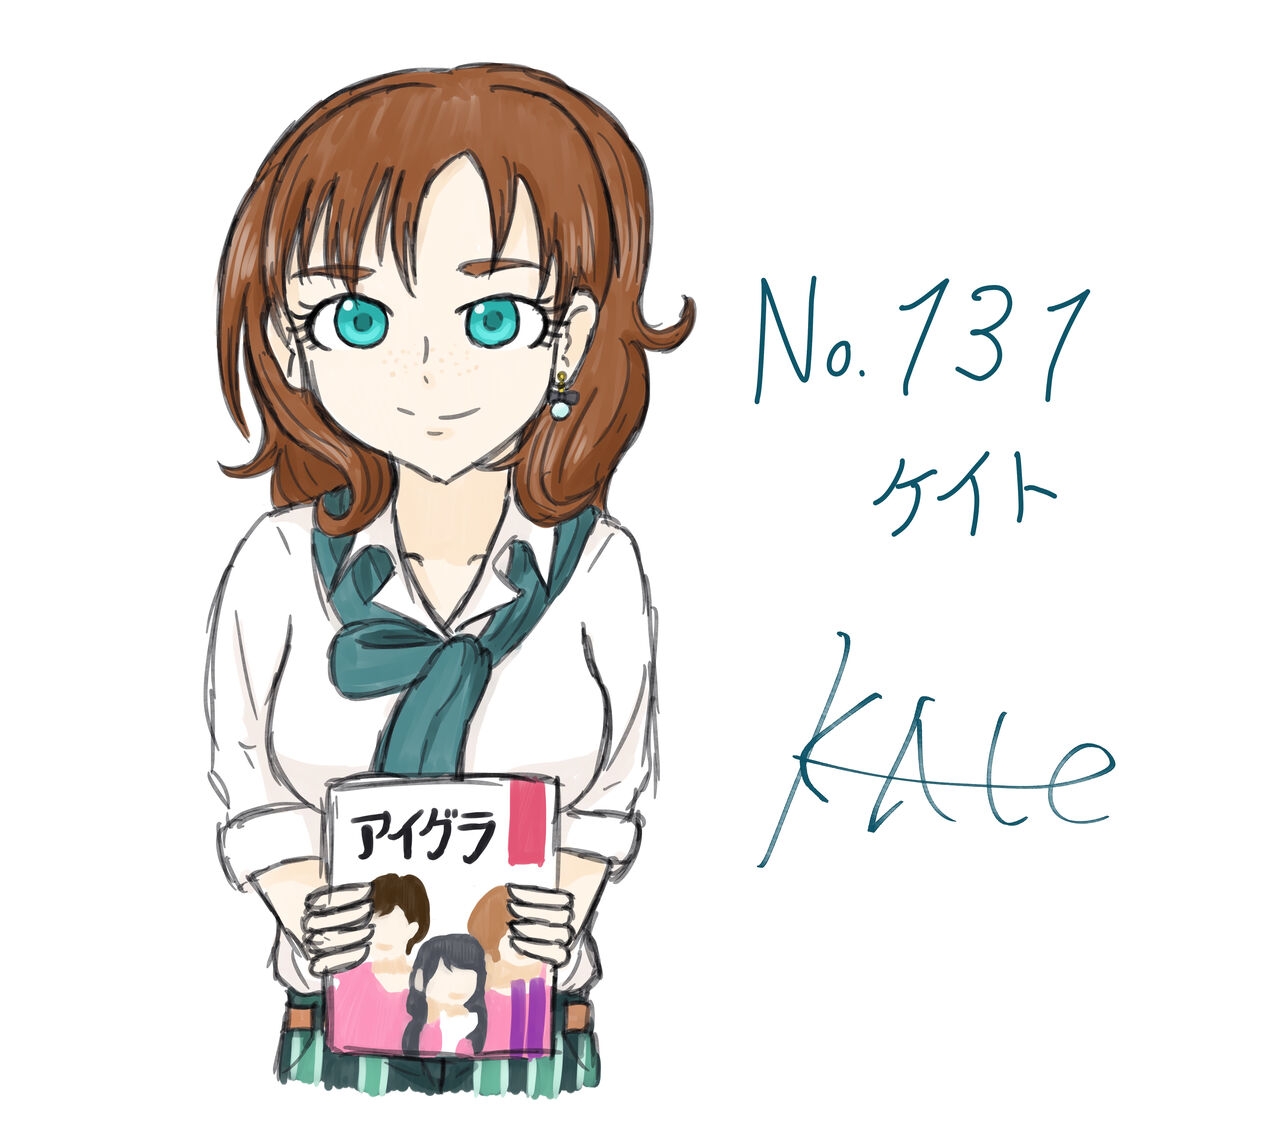 Idolmaster Character Fan Art Gallery - Kate 51